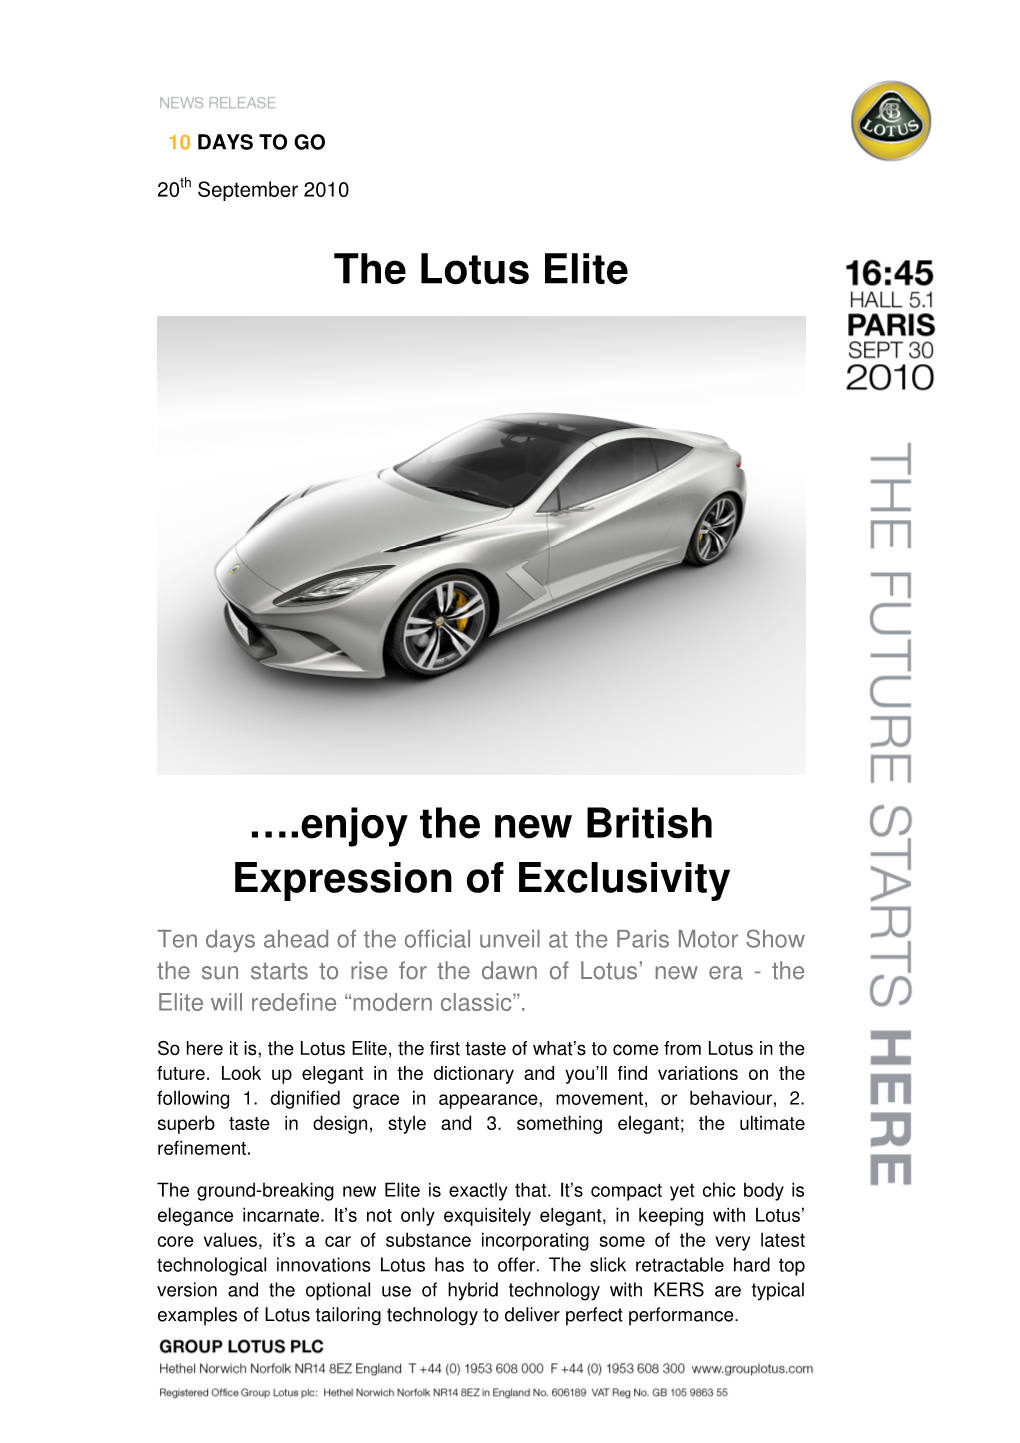 The Lotus Elite